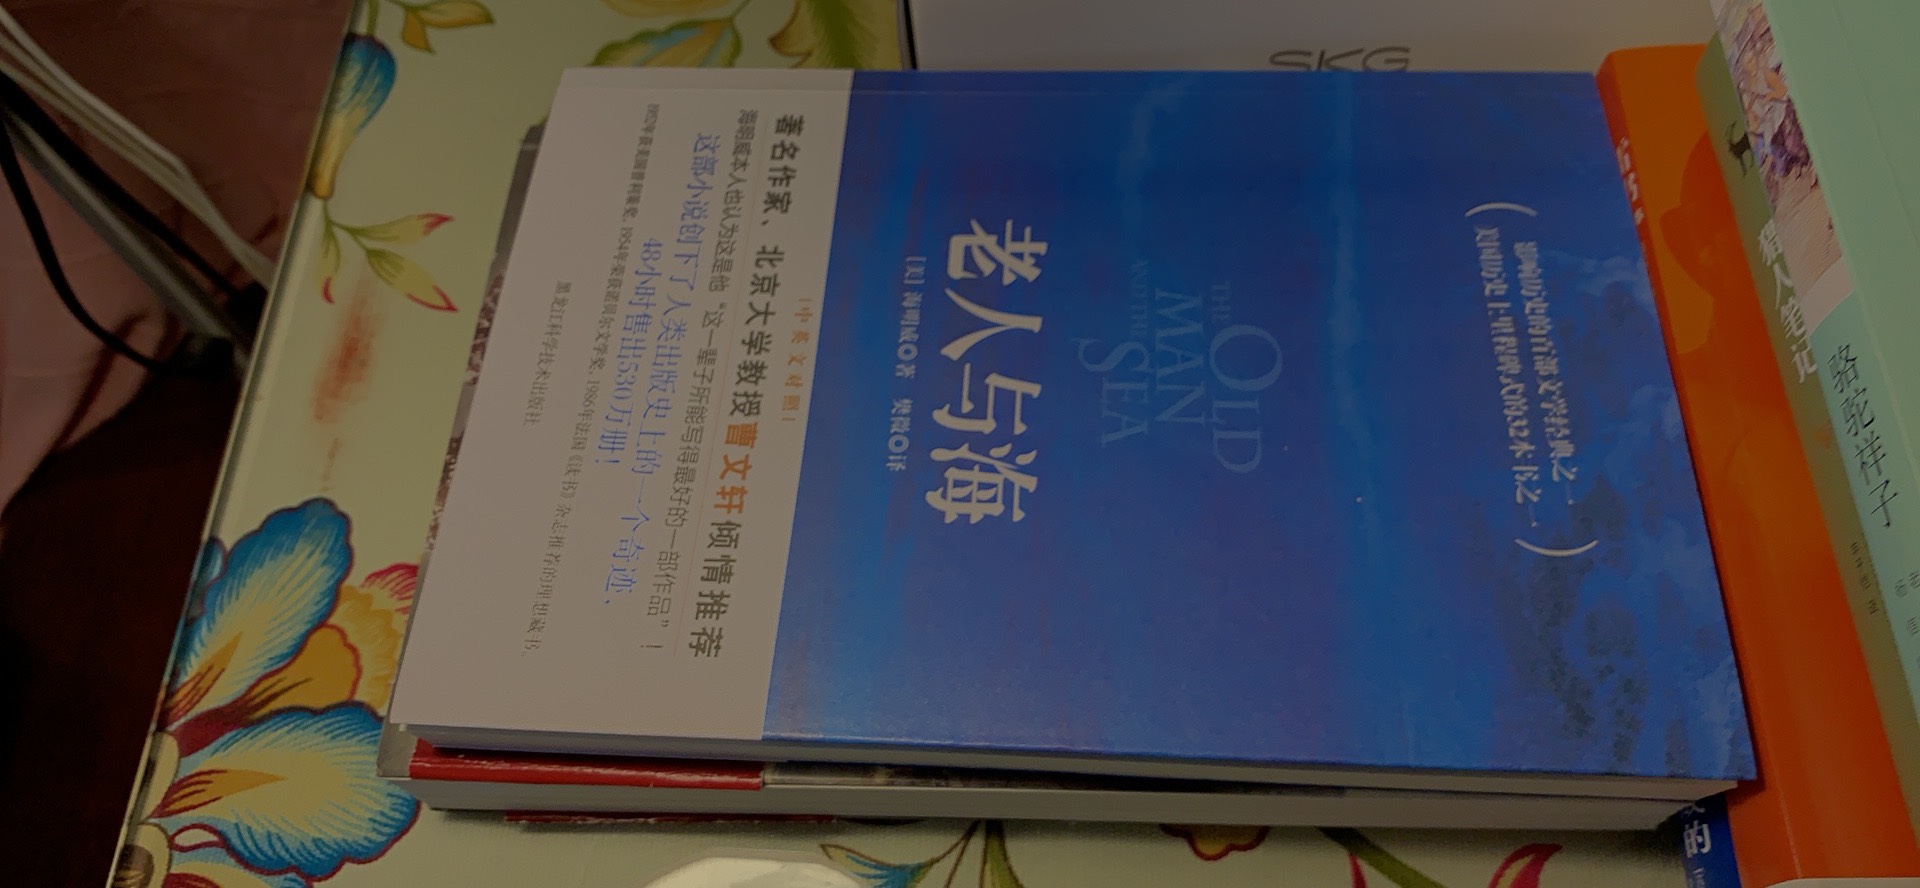 没想到这个版本是双语的，前面一半是中文版本，后面一半是英文版本，书不厚，文字也比较简单，小孩容易看。